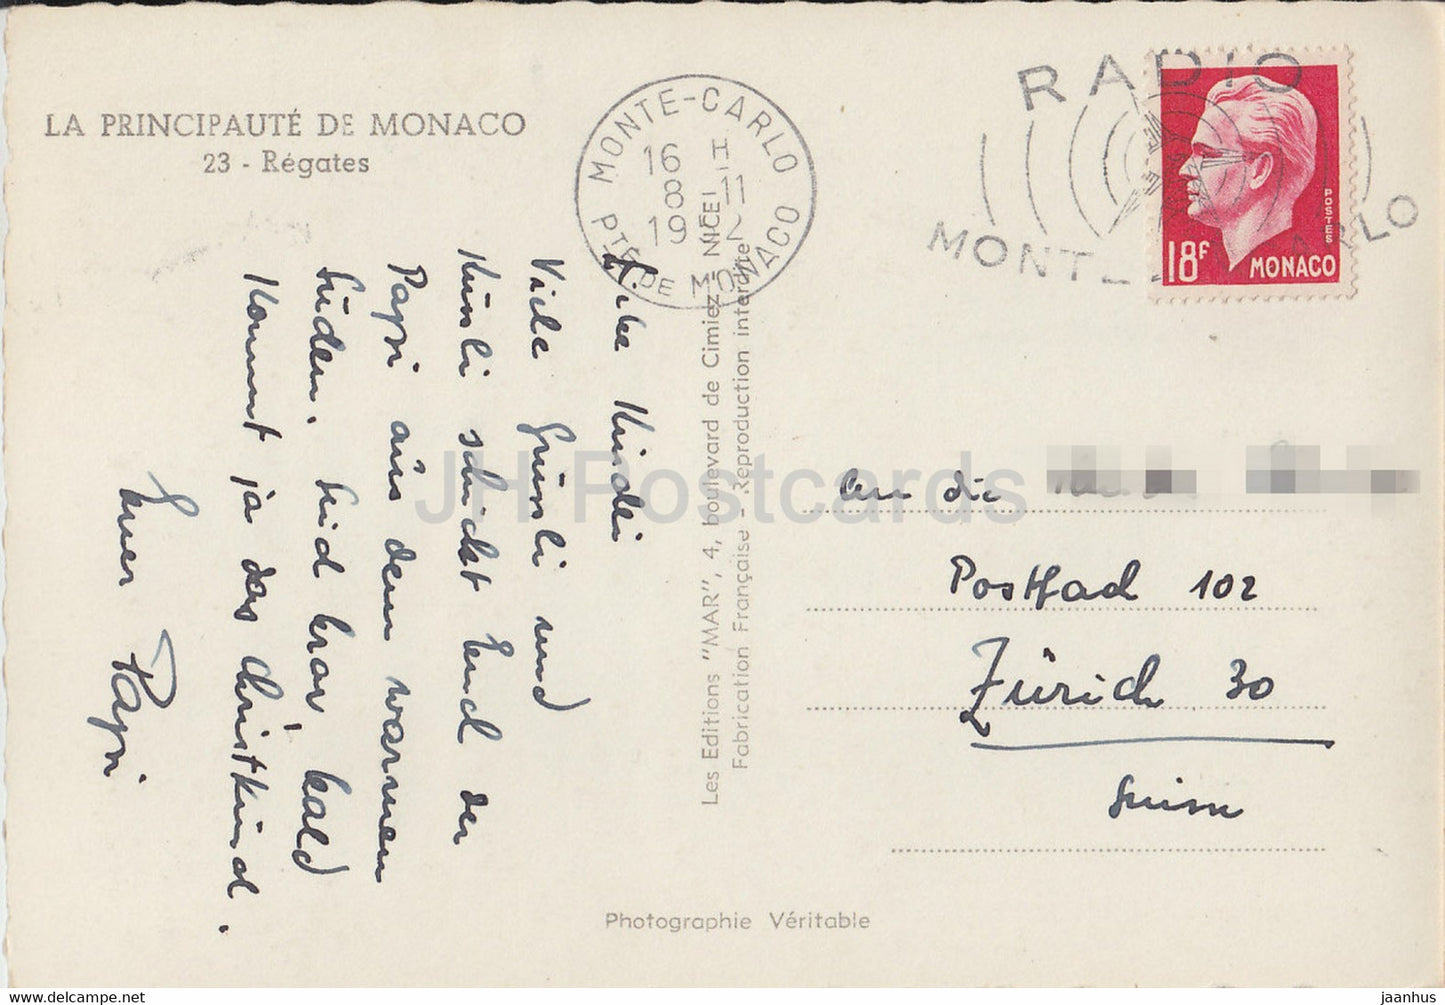 Régates - Régate - voilier - carte postale ancienne - 1952 - Monaco - occasion